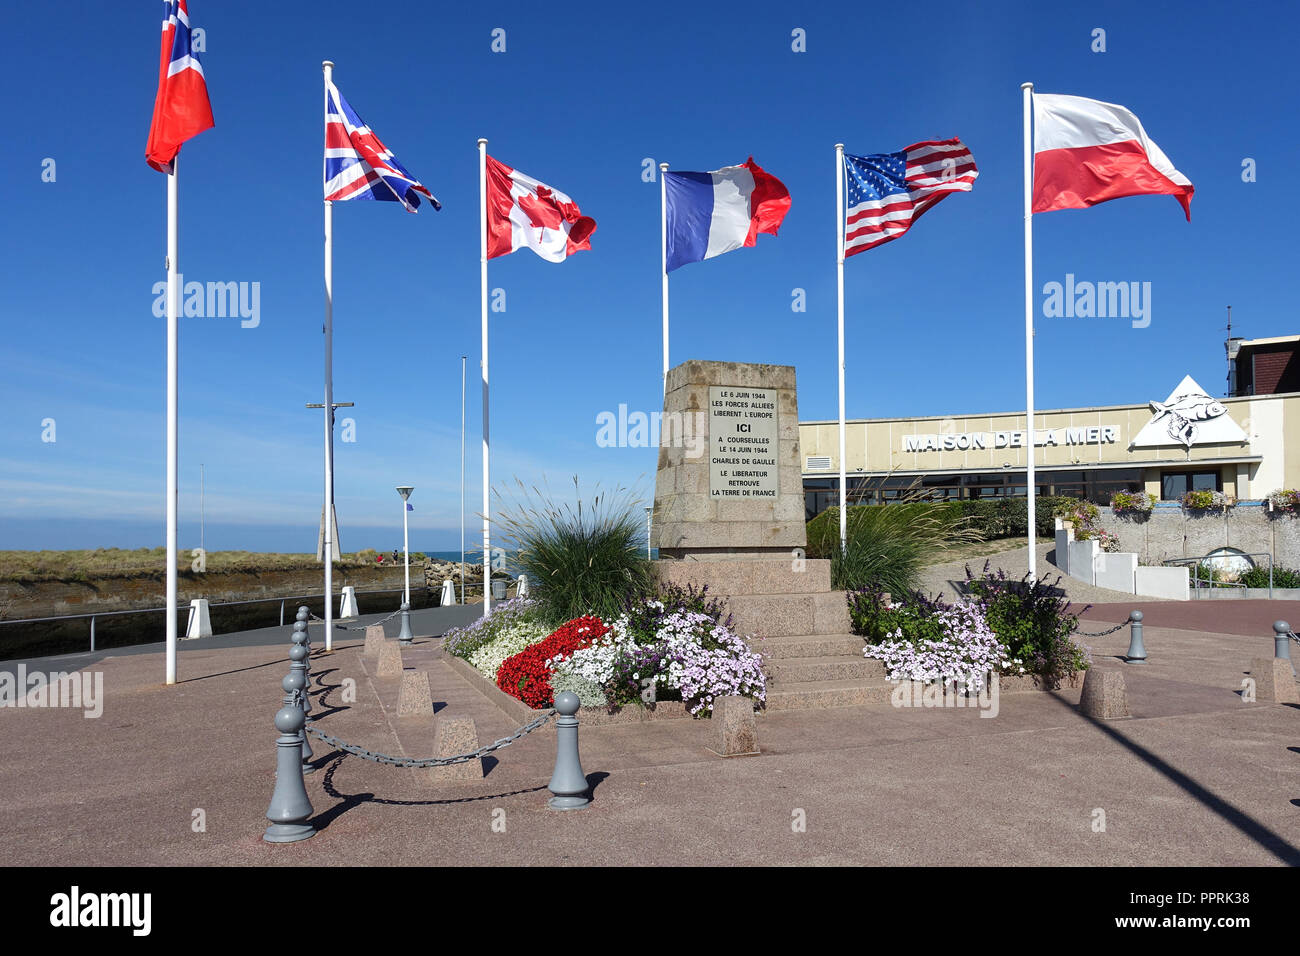 Monument commémore le débarquement et le premier retour au sol français du Général de Gaulle, chef des Français Libres, le 14 juin 1944 Banque D'Images